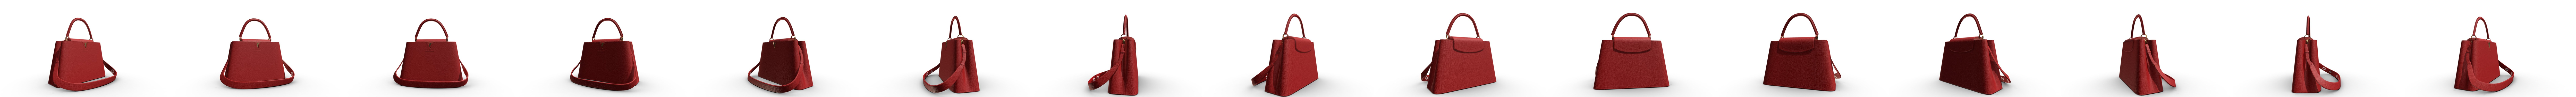 Louis Vuitton bag Capucines 3D Model Collection